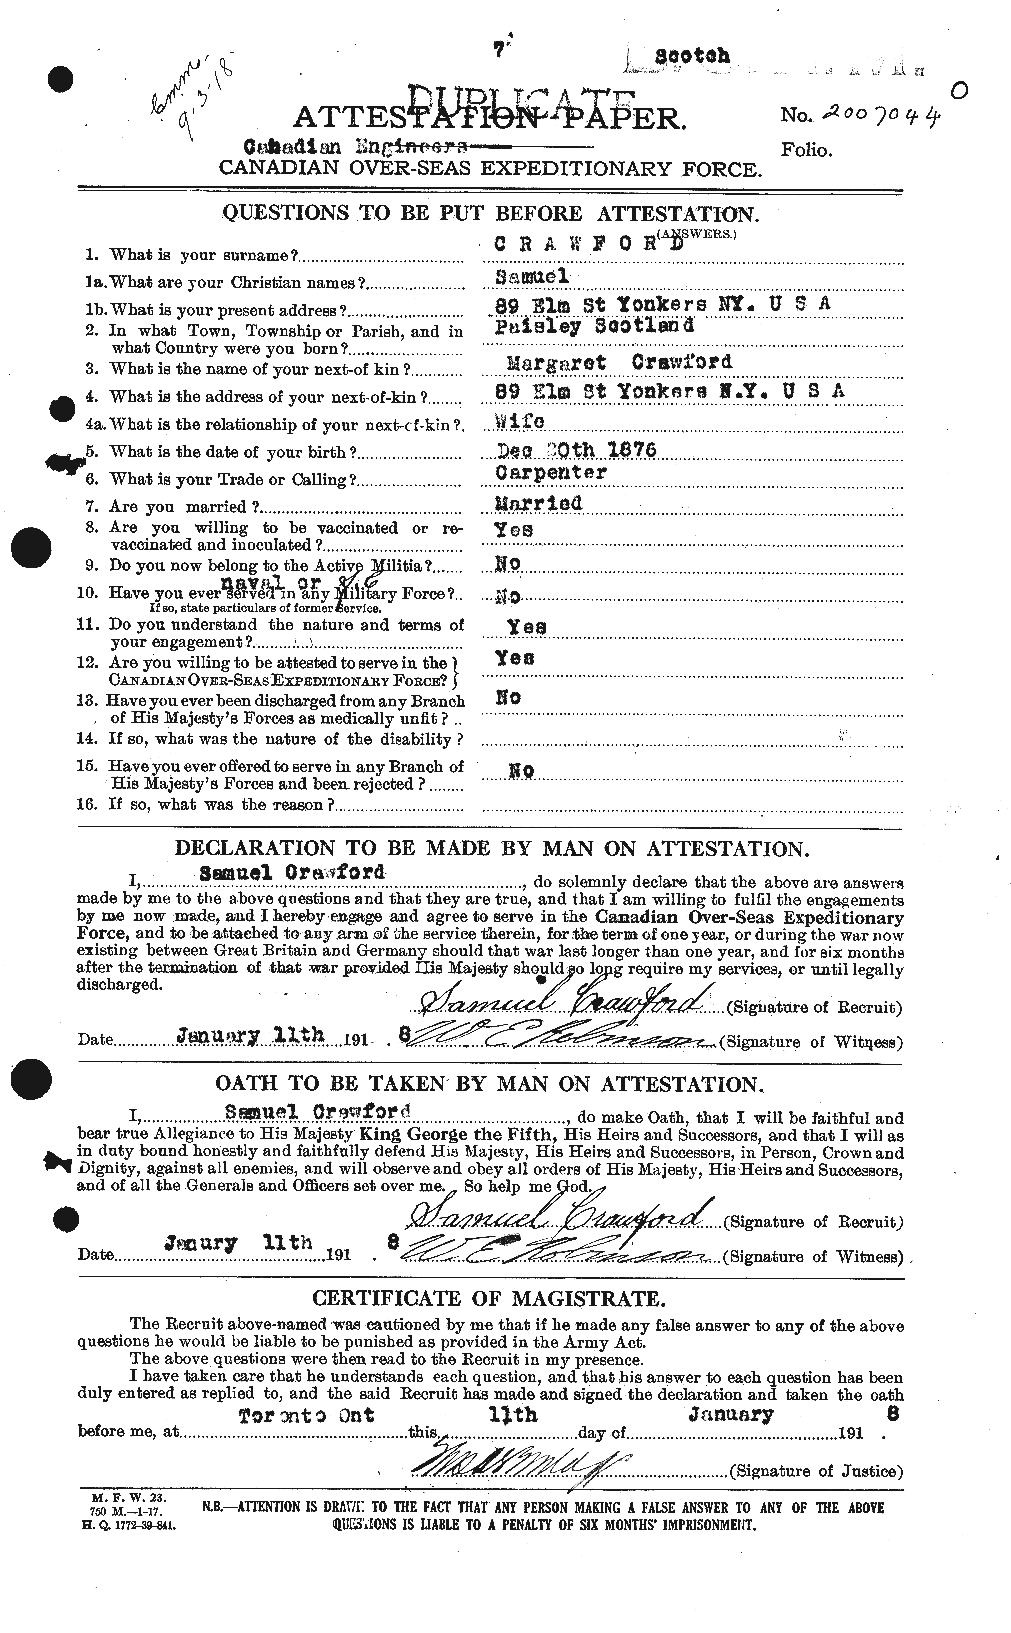 Dossiers du Personnel de la Première Guerre mondiale - CEC 061377a